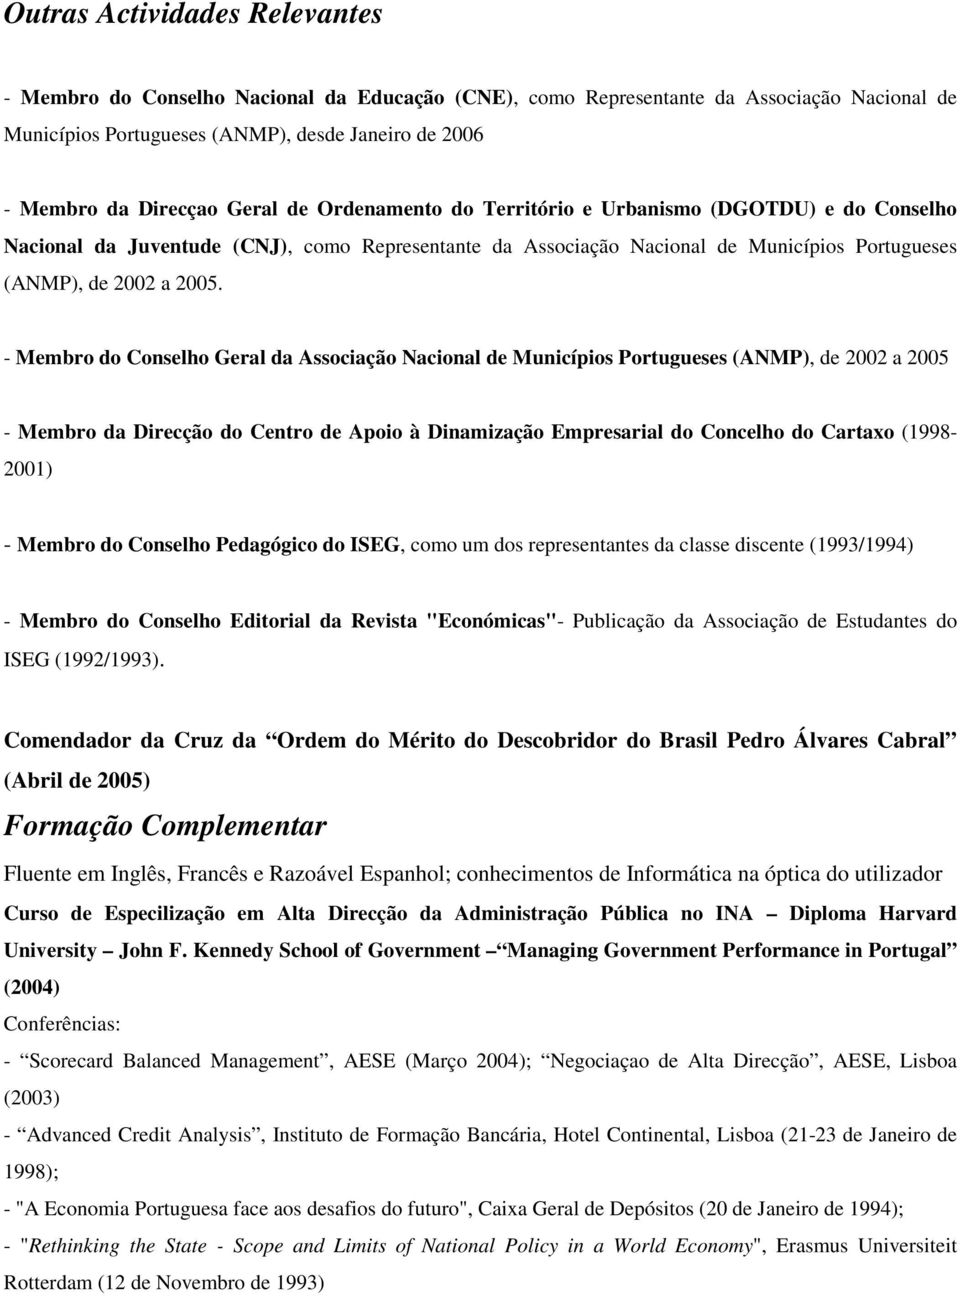 - Membro do Conselho Geral da Associação Nacional de Municípios Portugueses (ANMP), de 2002 a 2005 - Membro da Direcção do Centro de Apoio à Dinamização Empresarial do Concelho do Cartaxo (1998-2001)